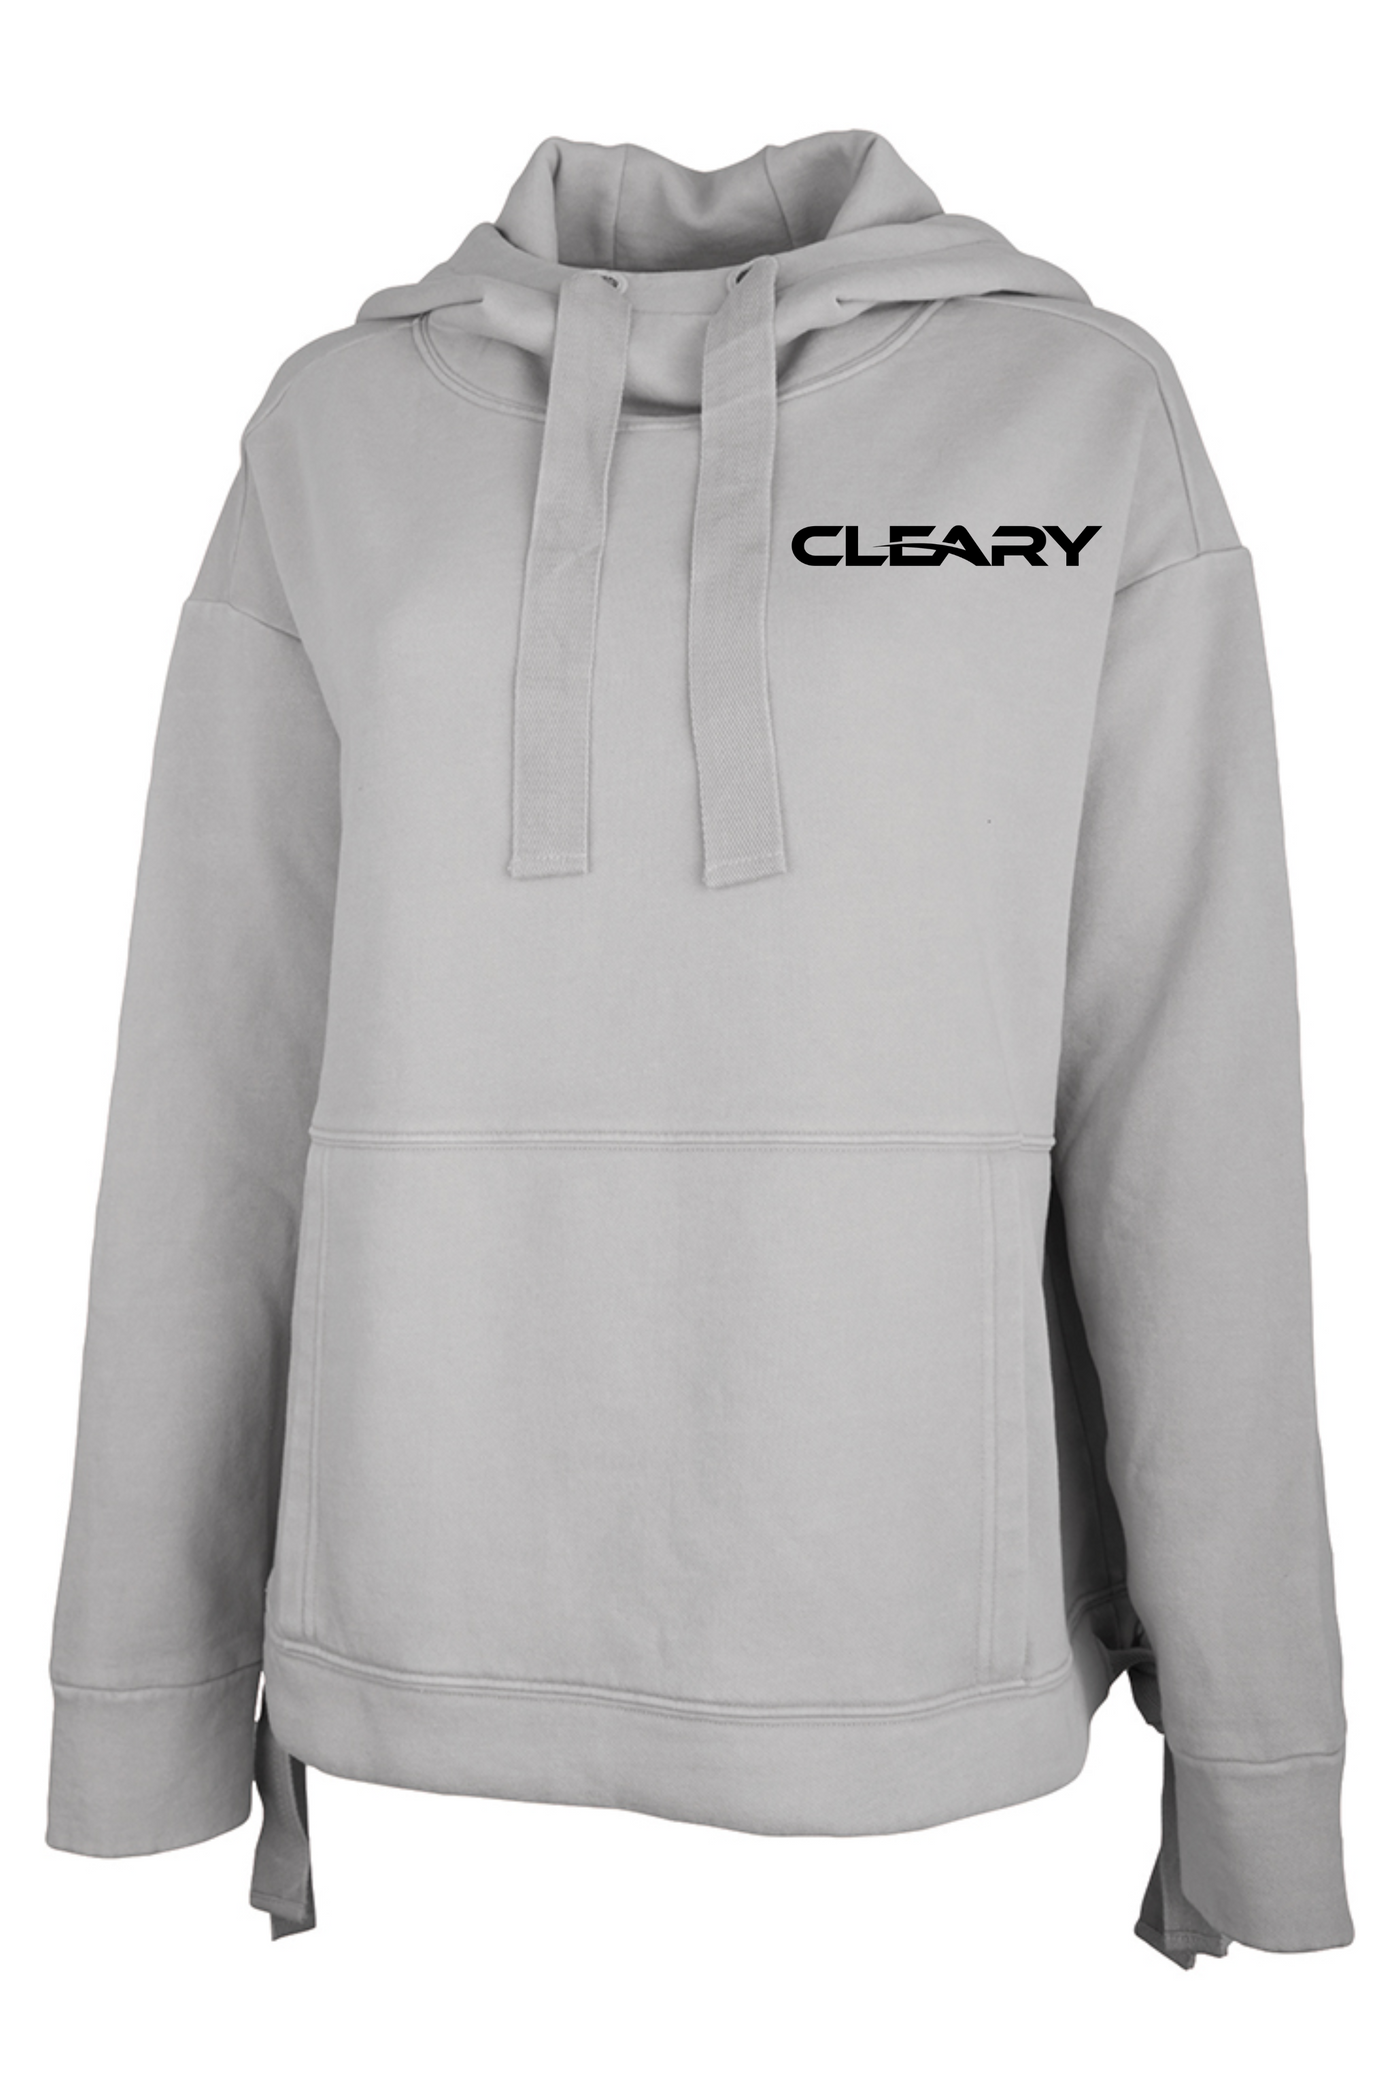 Cleary's Women's Laconia Hooded Sweatshirt Light Grey